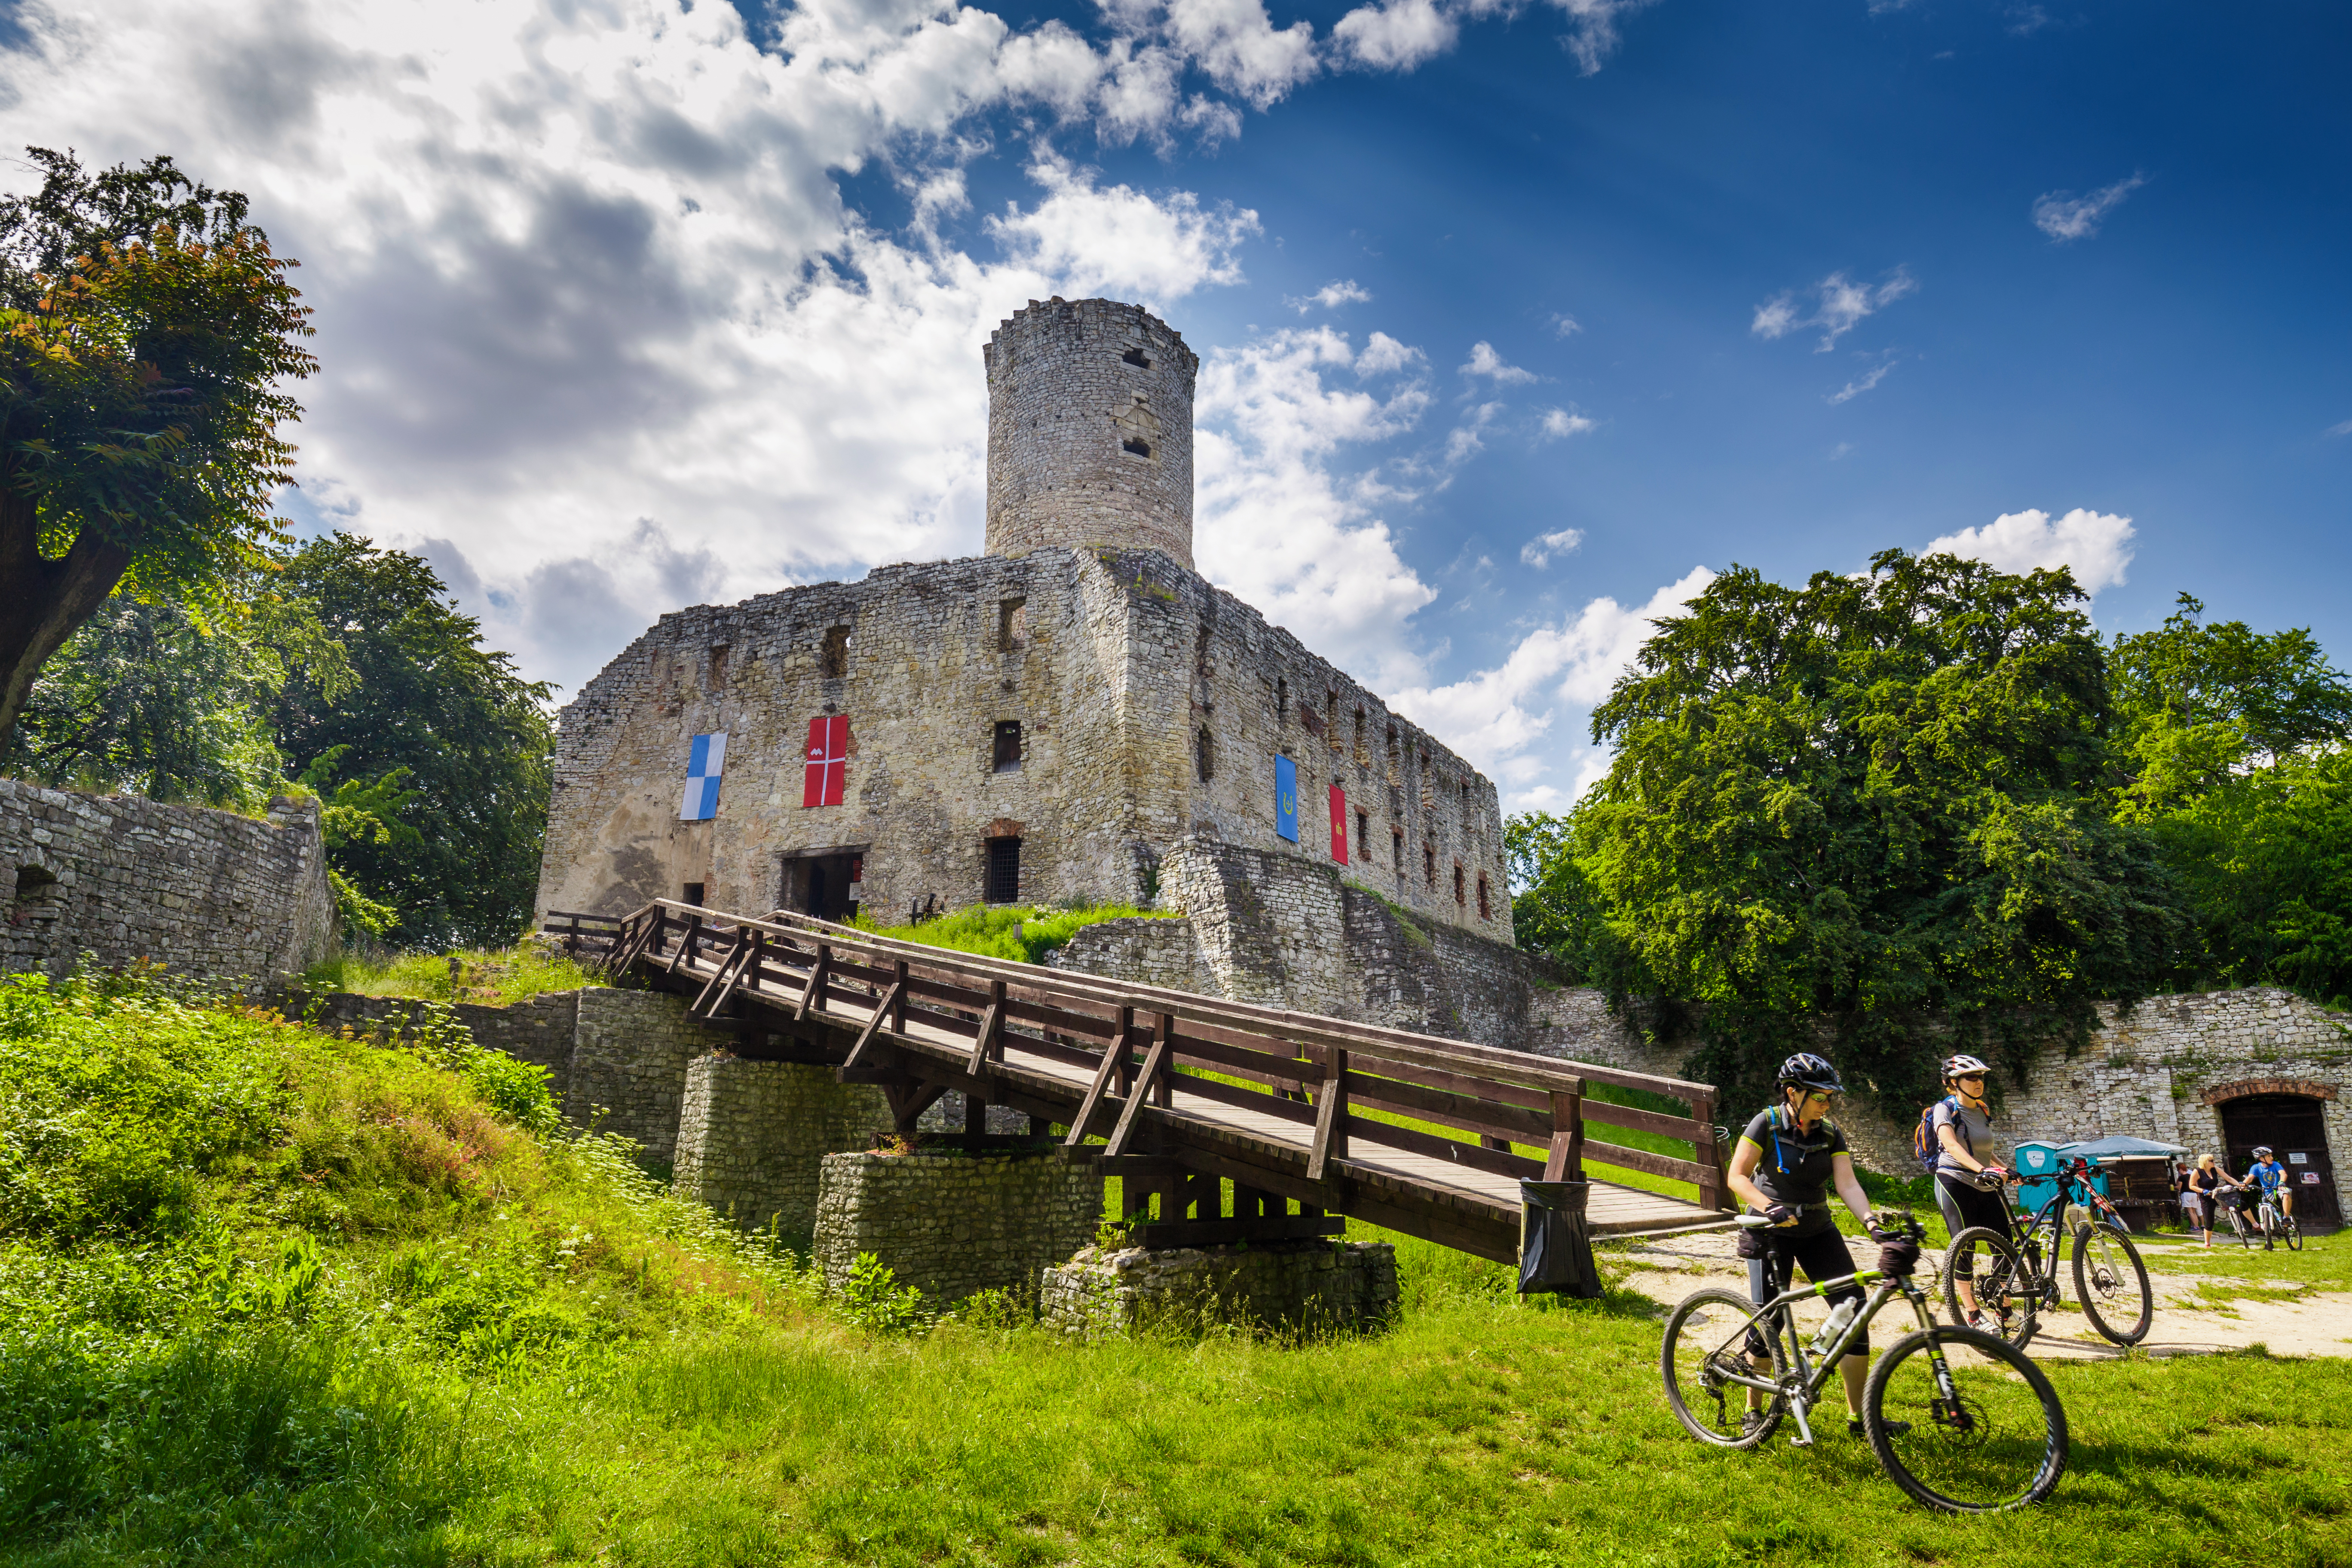 na zdjęciu widać rowerzystów prowadzących rowery pod kamienny zamek 